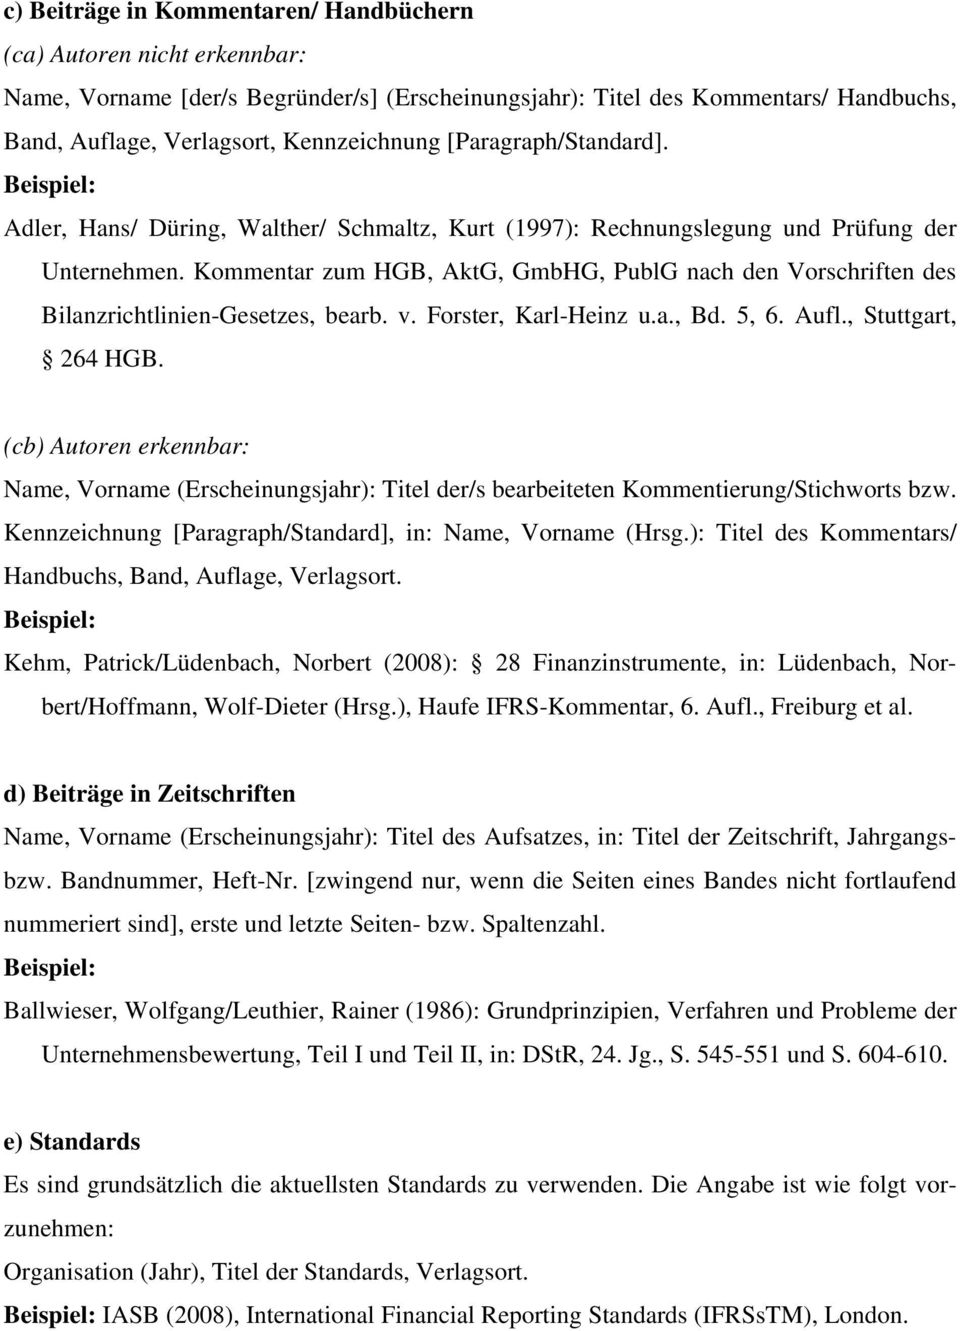 Kommentar zum HGB, AktG, GmbHG, PublG nach den Vorschriften des Bilanzrichtlinien-Gesetzes, bearb. v. Forster, Karl-Heinz u.a., Bd. 5, 6. Aufl., Stuttgart, 264 HGB.